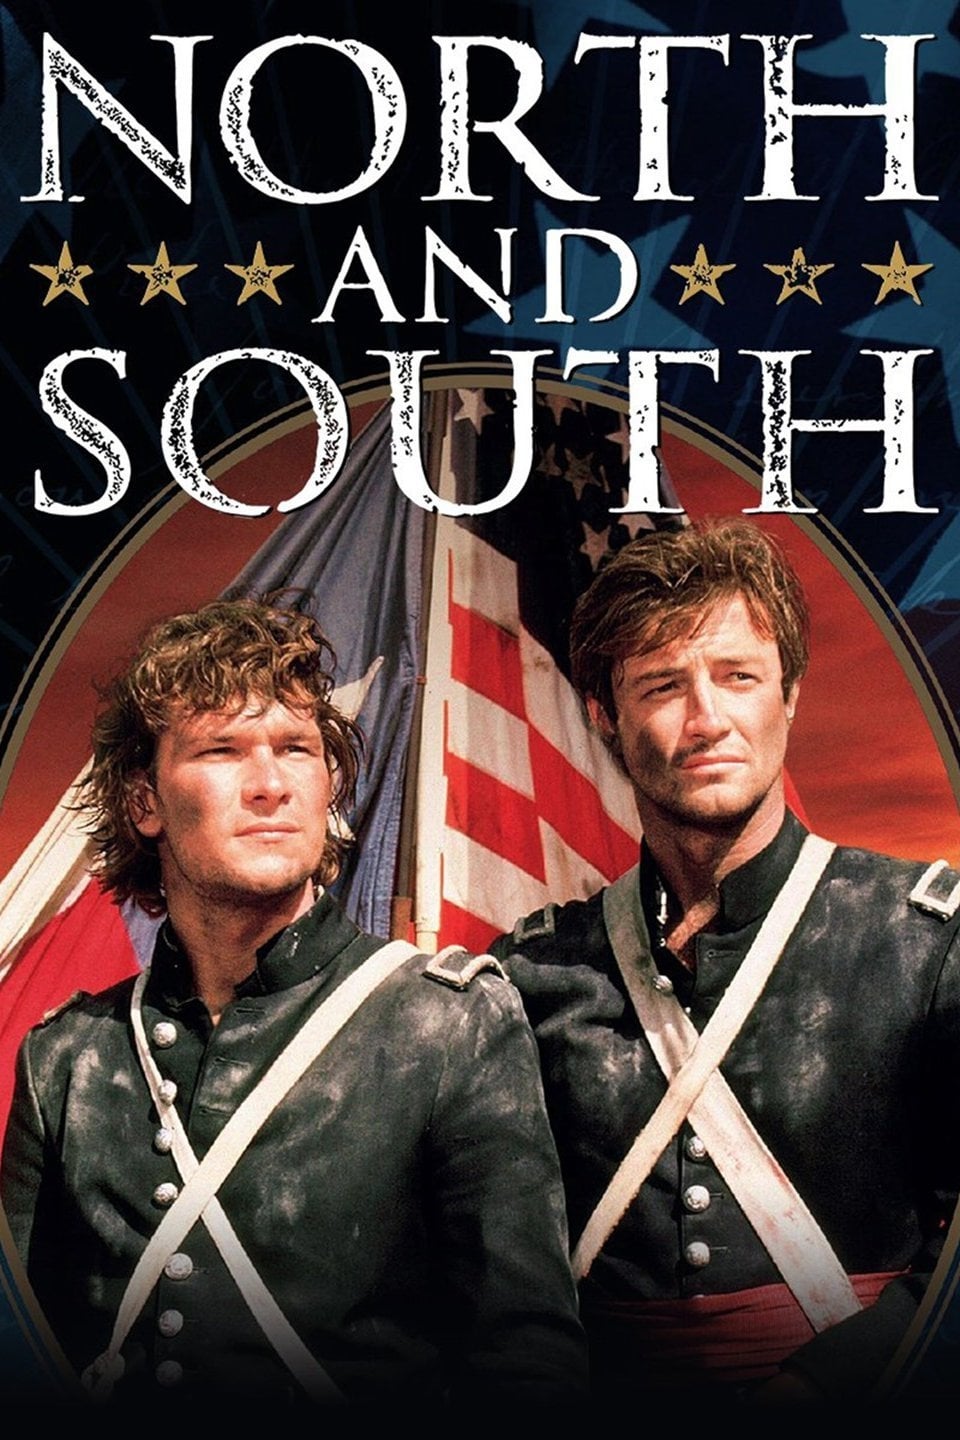 Nord et Sud (1985)